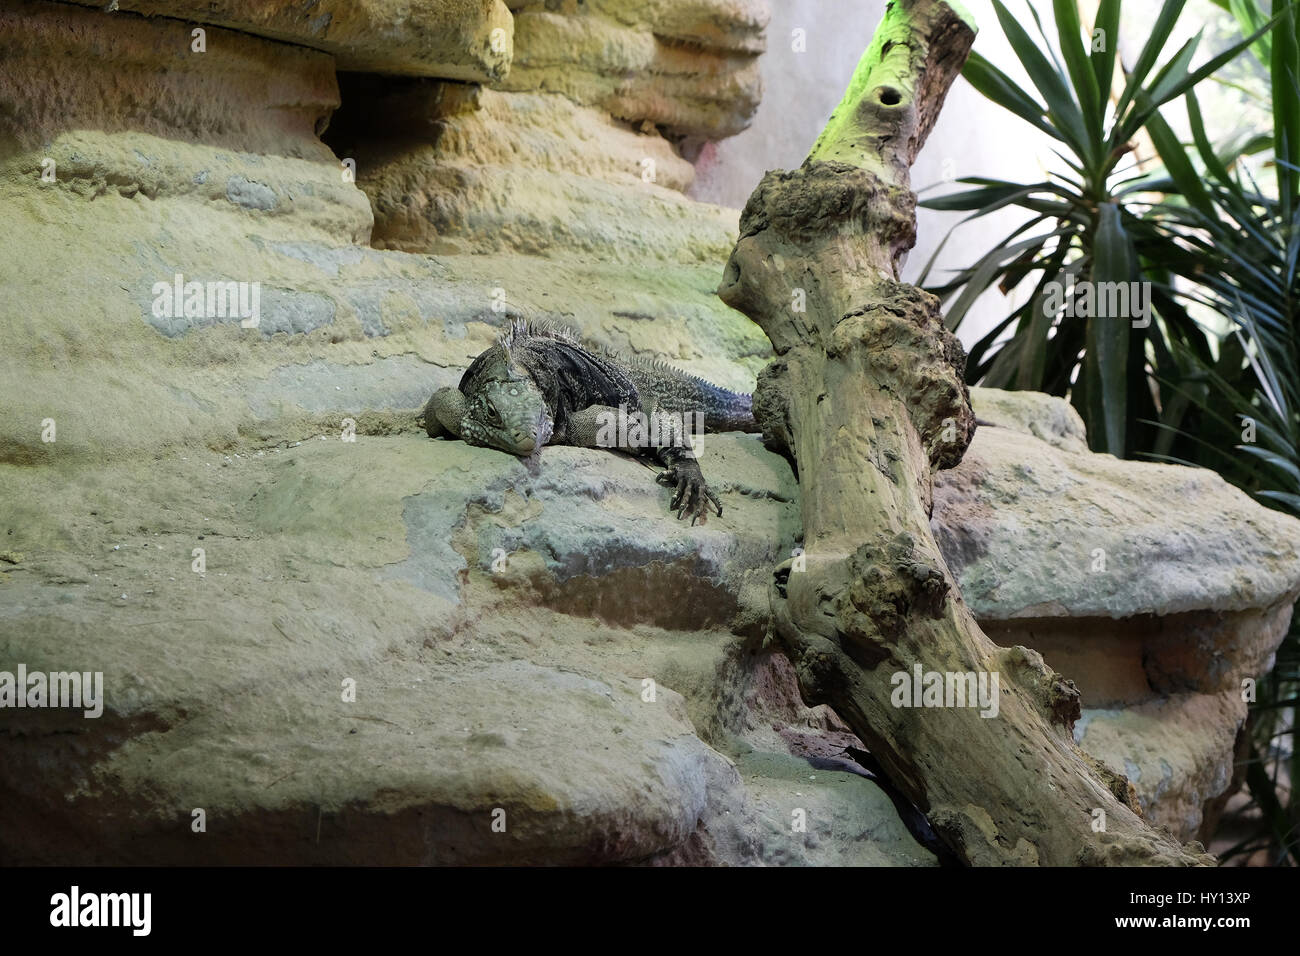 Rock cubano iguana (Cyclura nubila), noto anche come il suolo cubano iguana Foto Stock